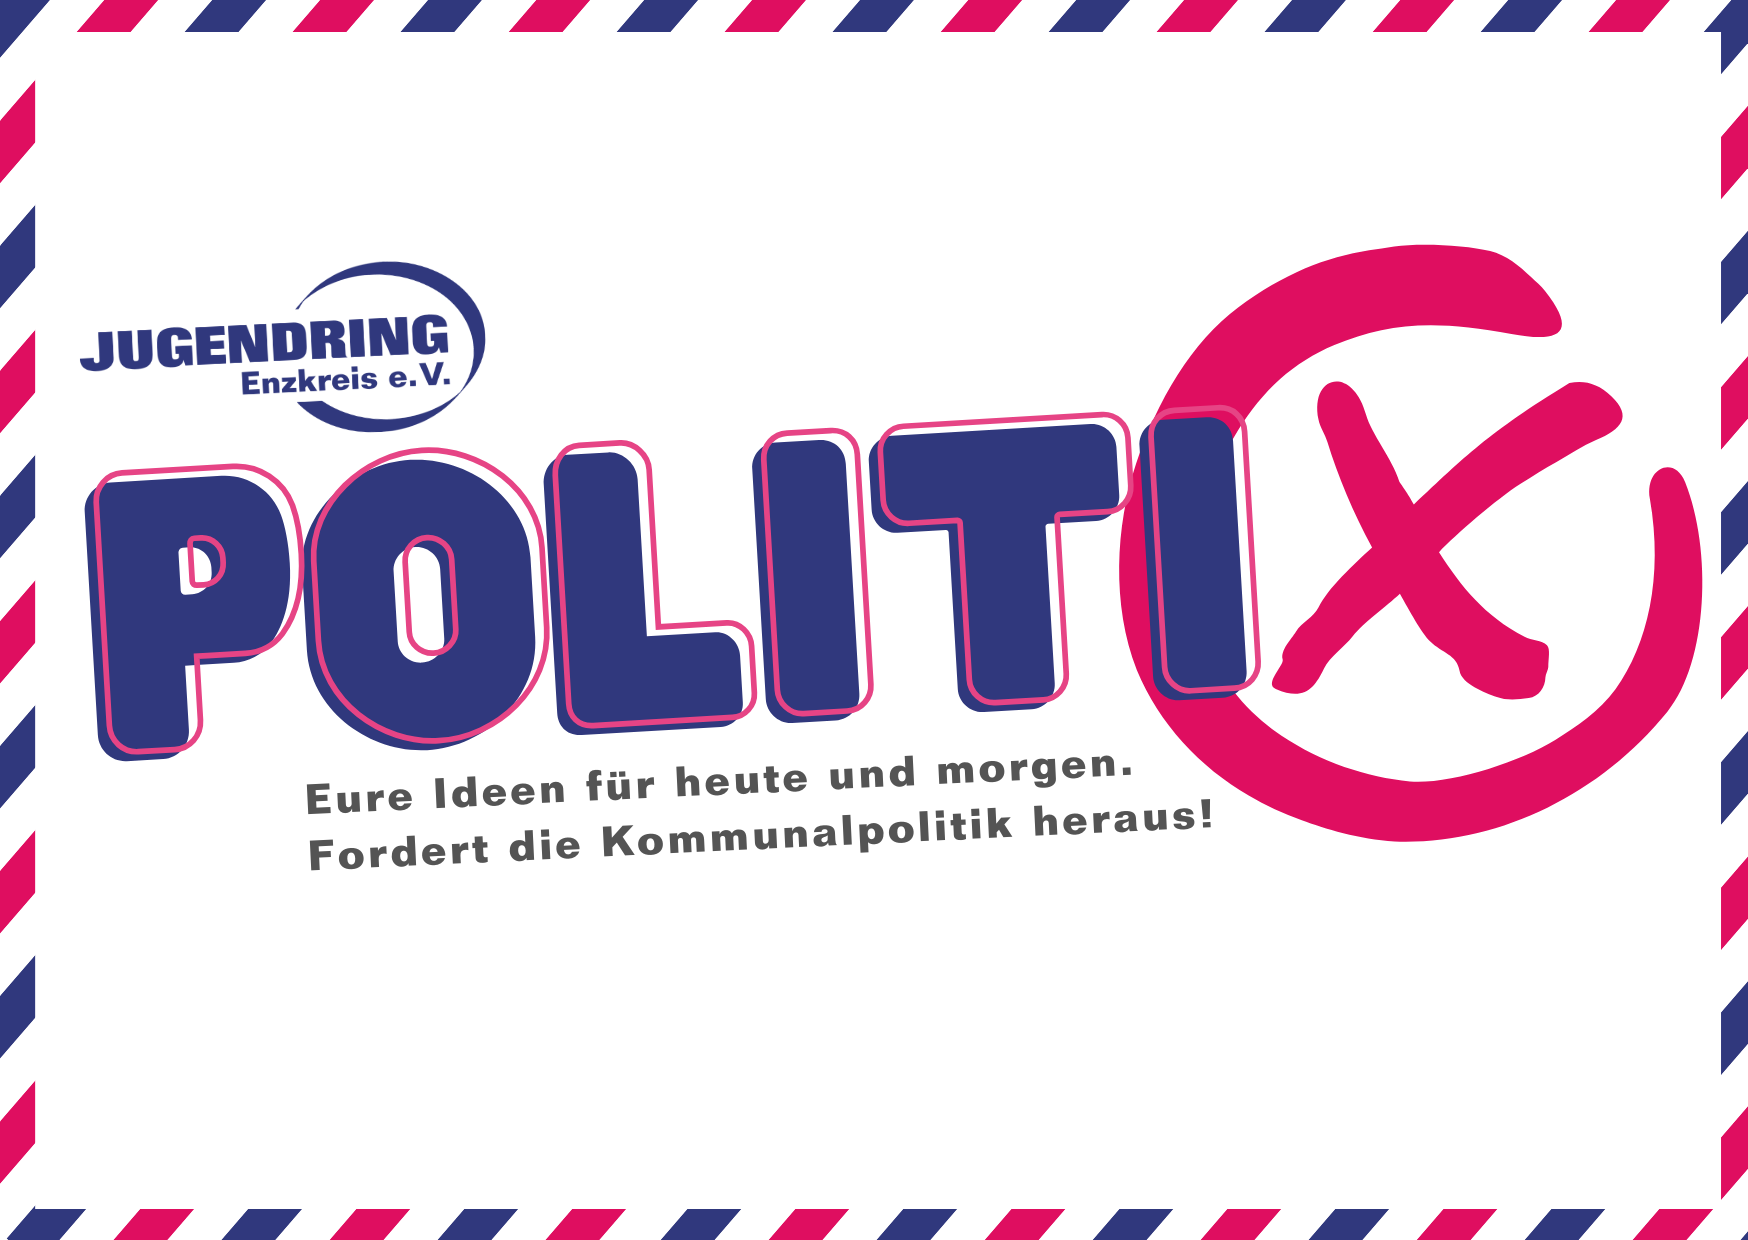 Jugendring Enzkreis - PolitiX - Grafik